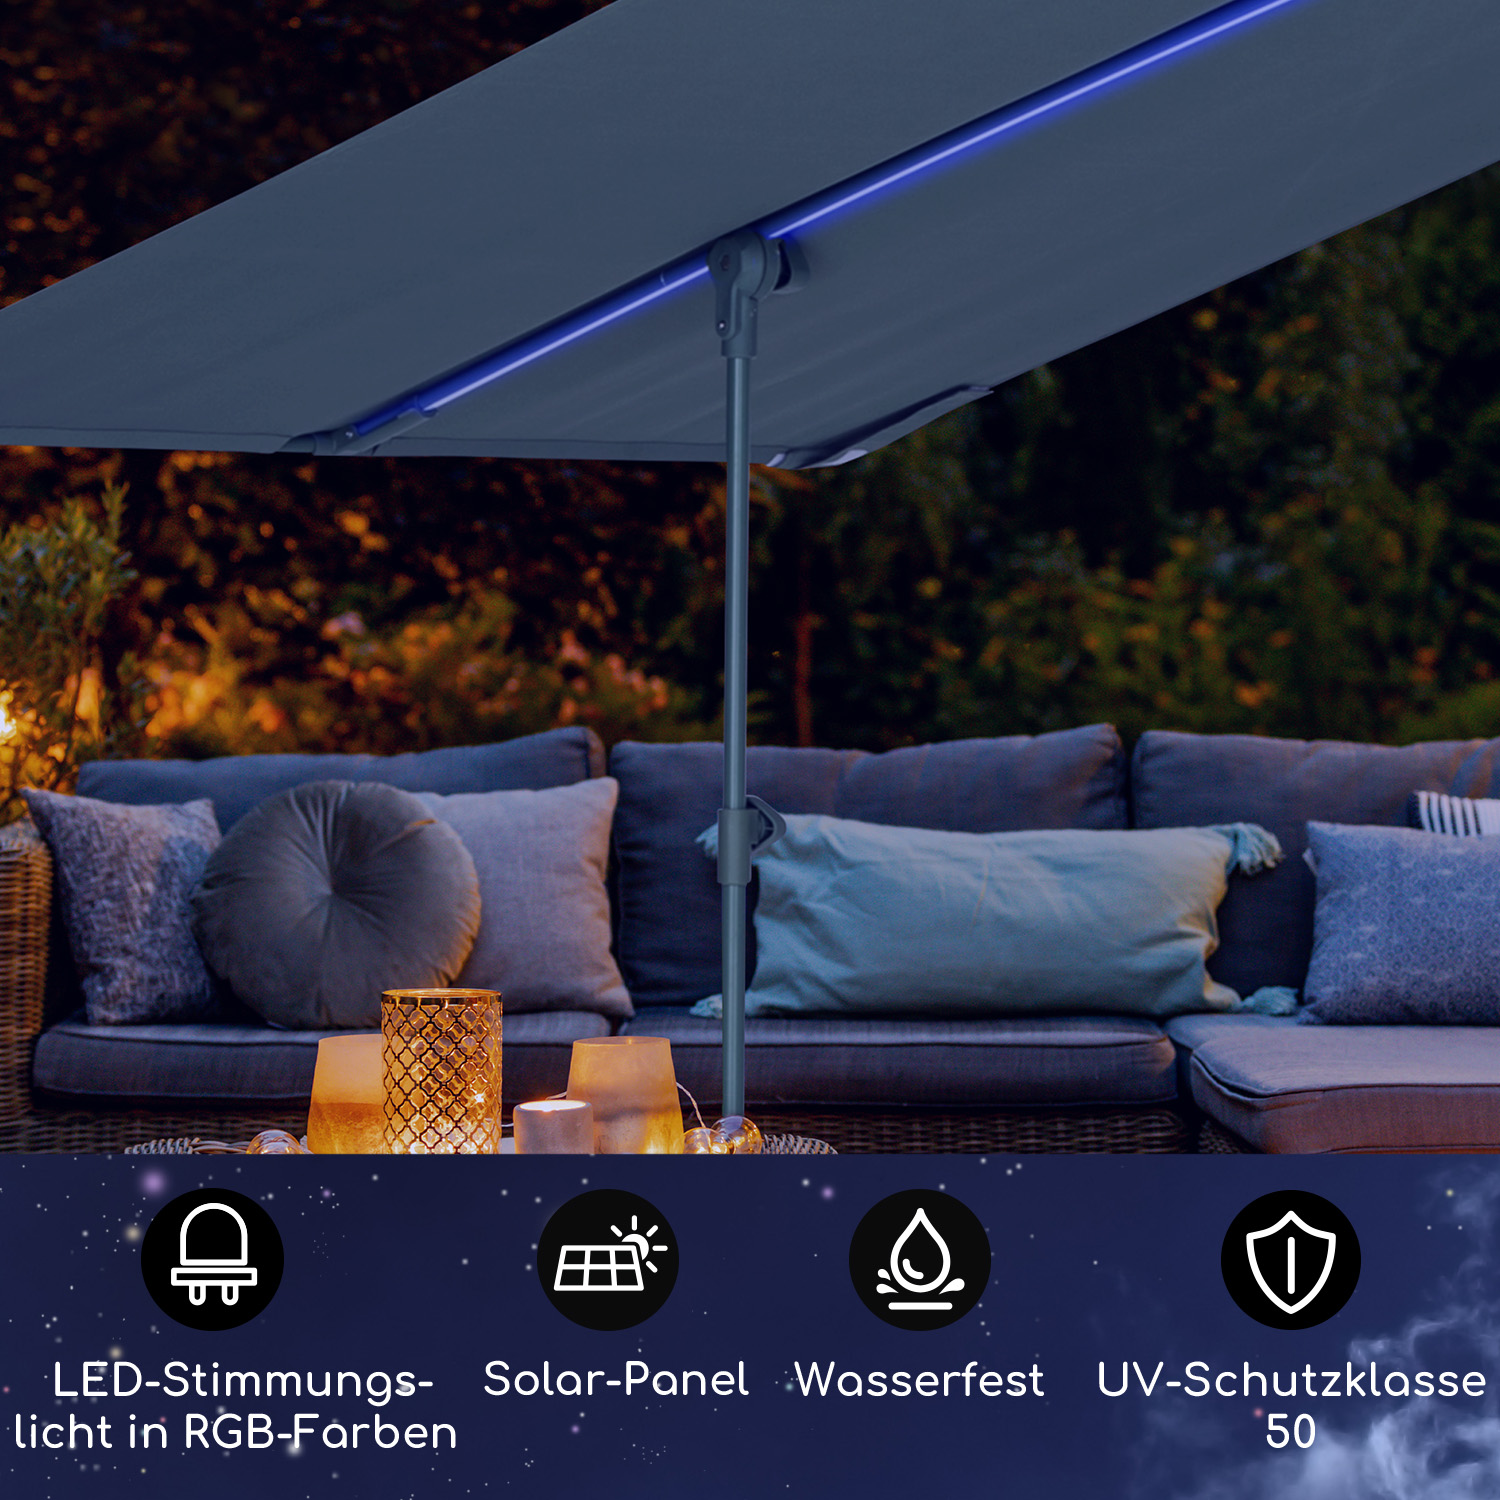 LED Sichtschutz, Parasol Shade BLUMFELDT Grün with Flex